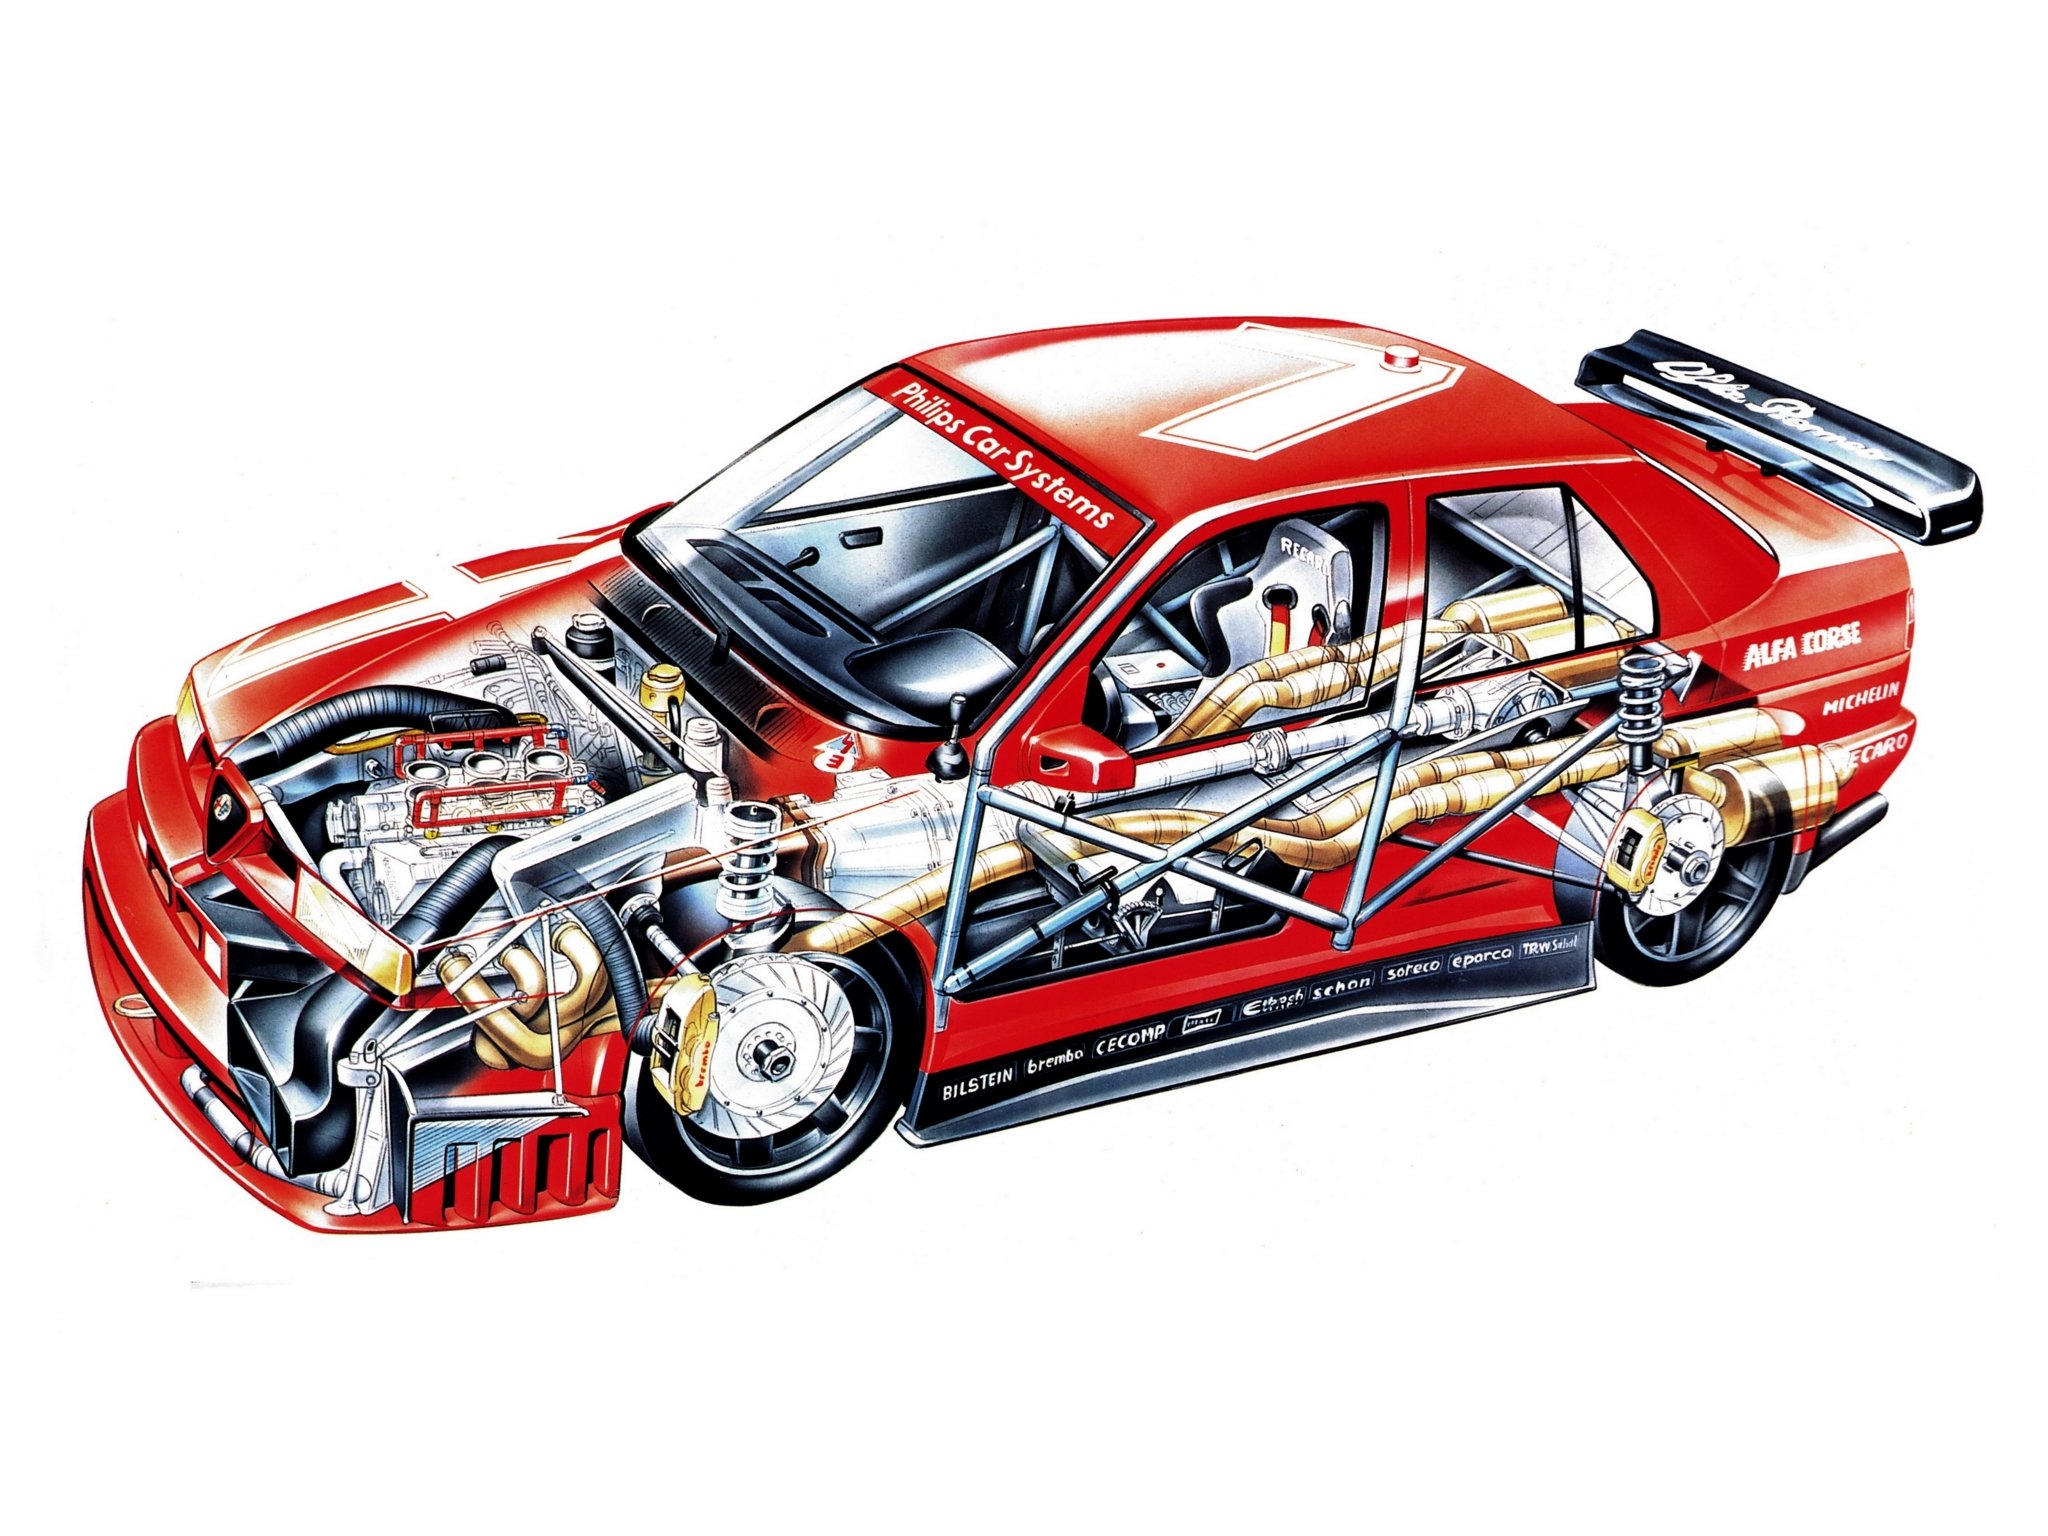 Alfa, Romeo, V T i, Dtm, se Race, Racing, Interior, Engine Wallpaper HD / Desktop and Mobile Background